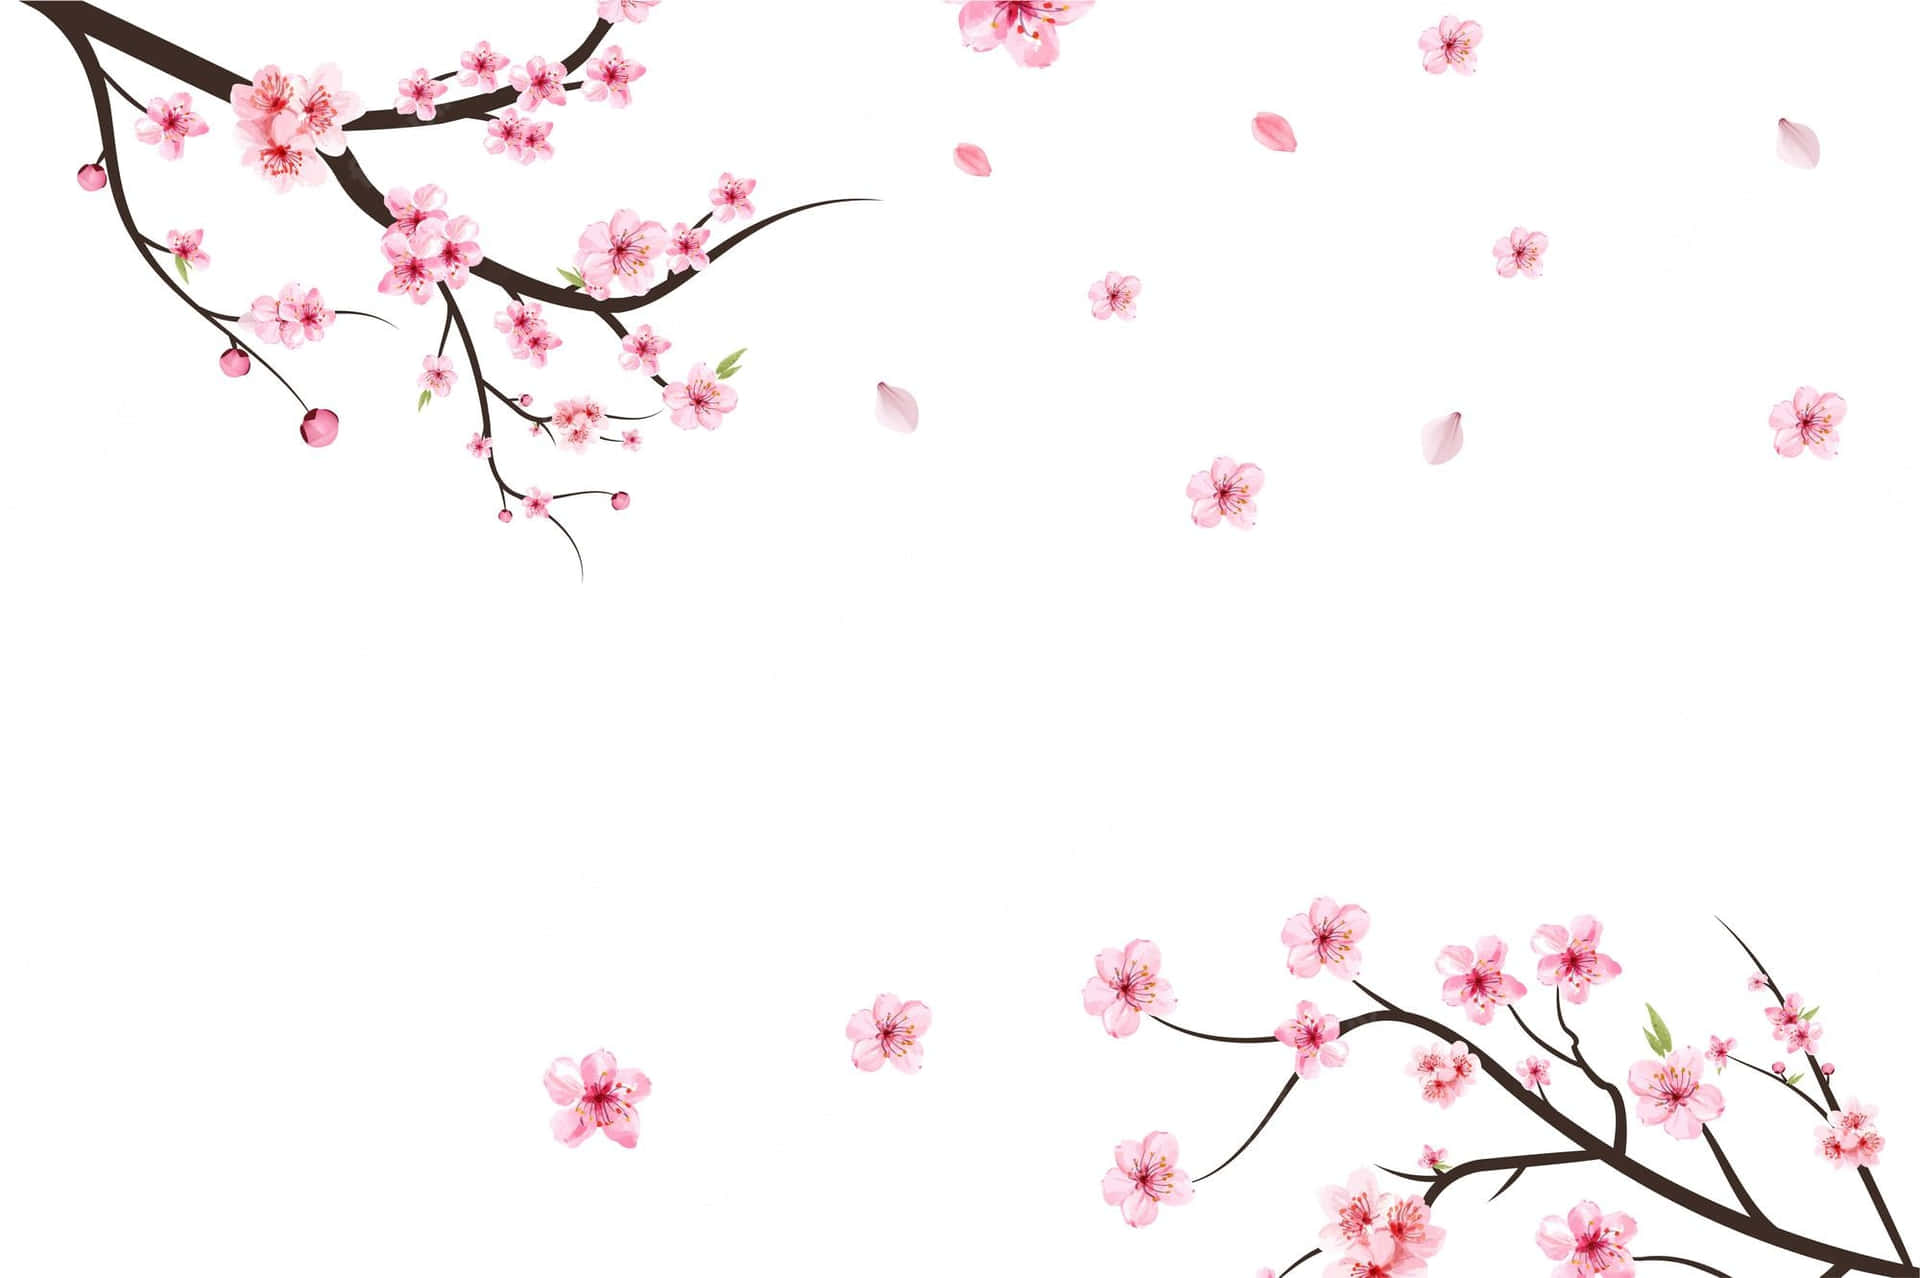 Uncampo Lleno De Árboles De Sakura En Plena Floración. Fondo de pantalla